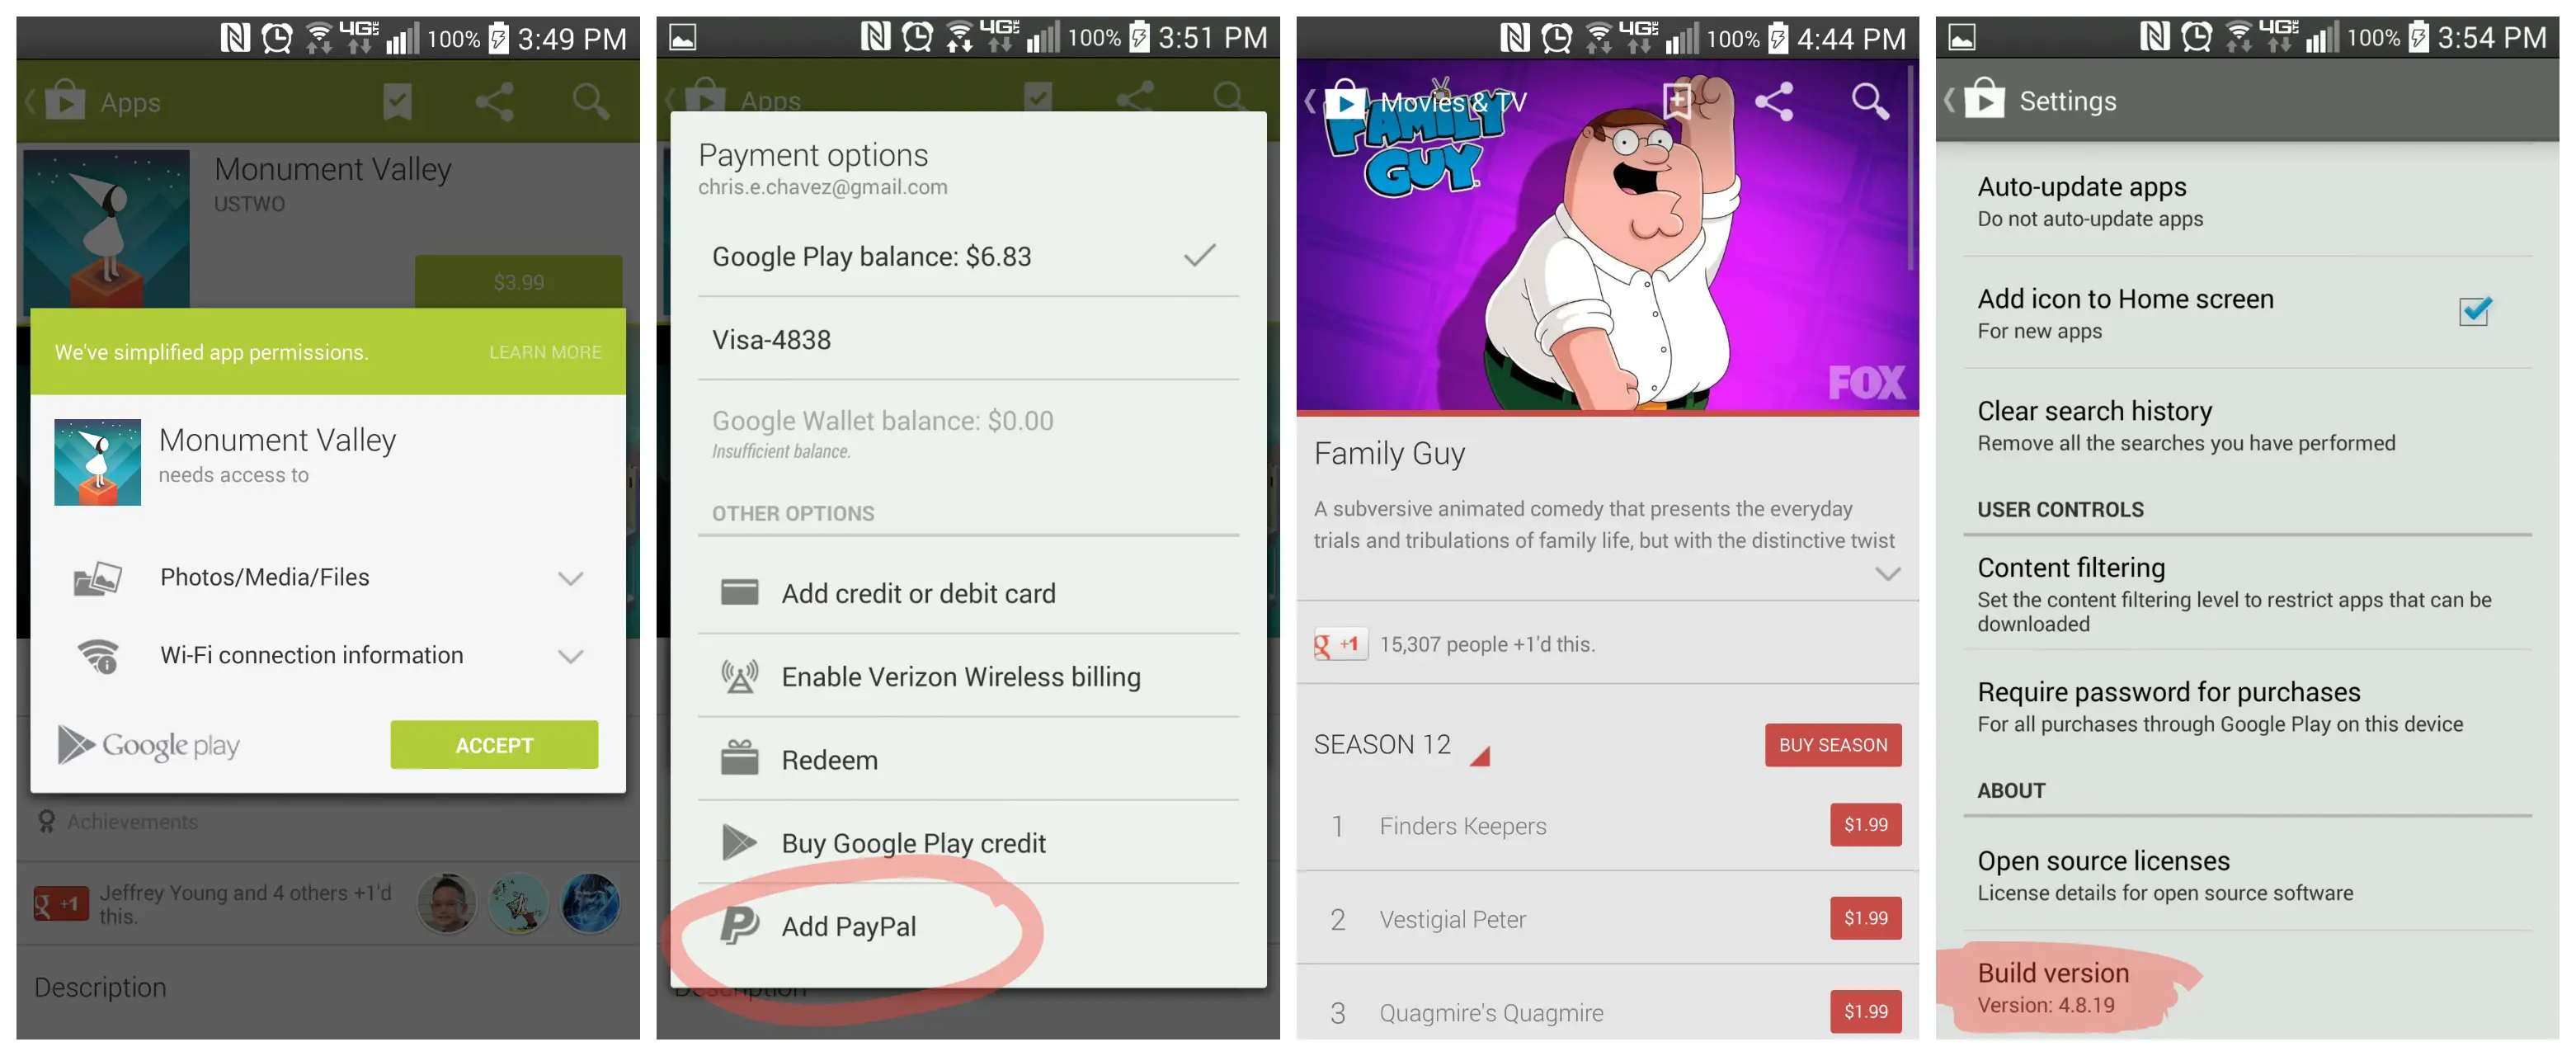 Текущая версия google play. Страница приложения в Google Play. Google Play 4pda. Процесс оплаты Google Play. Google Play Family guy.